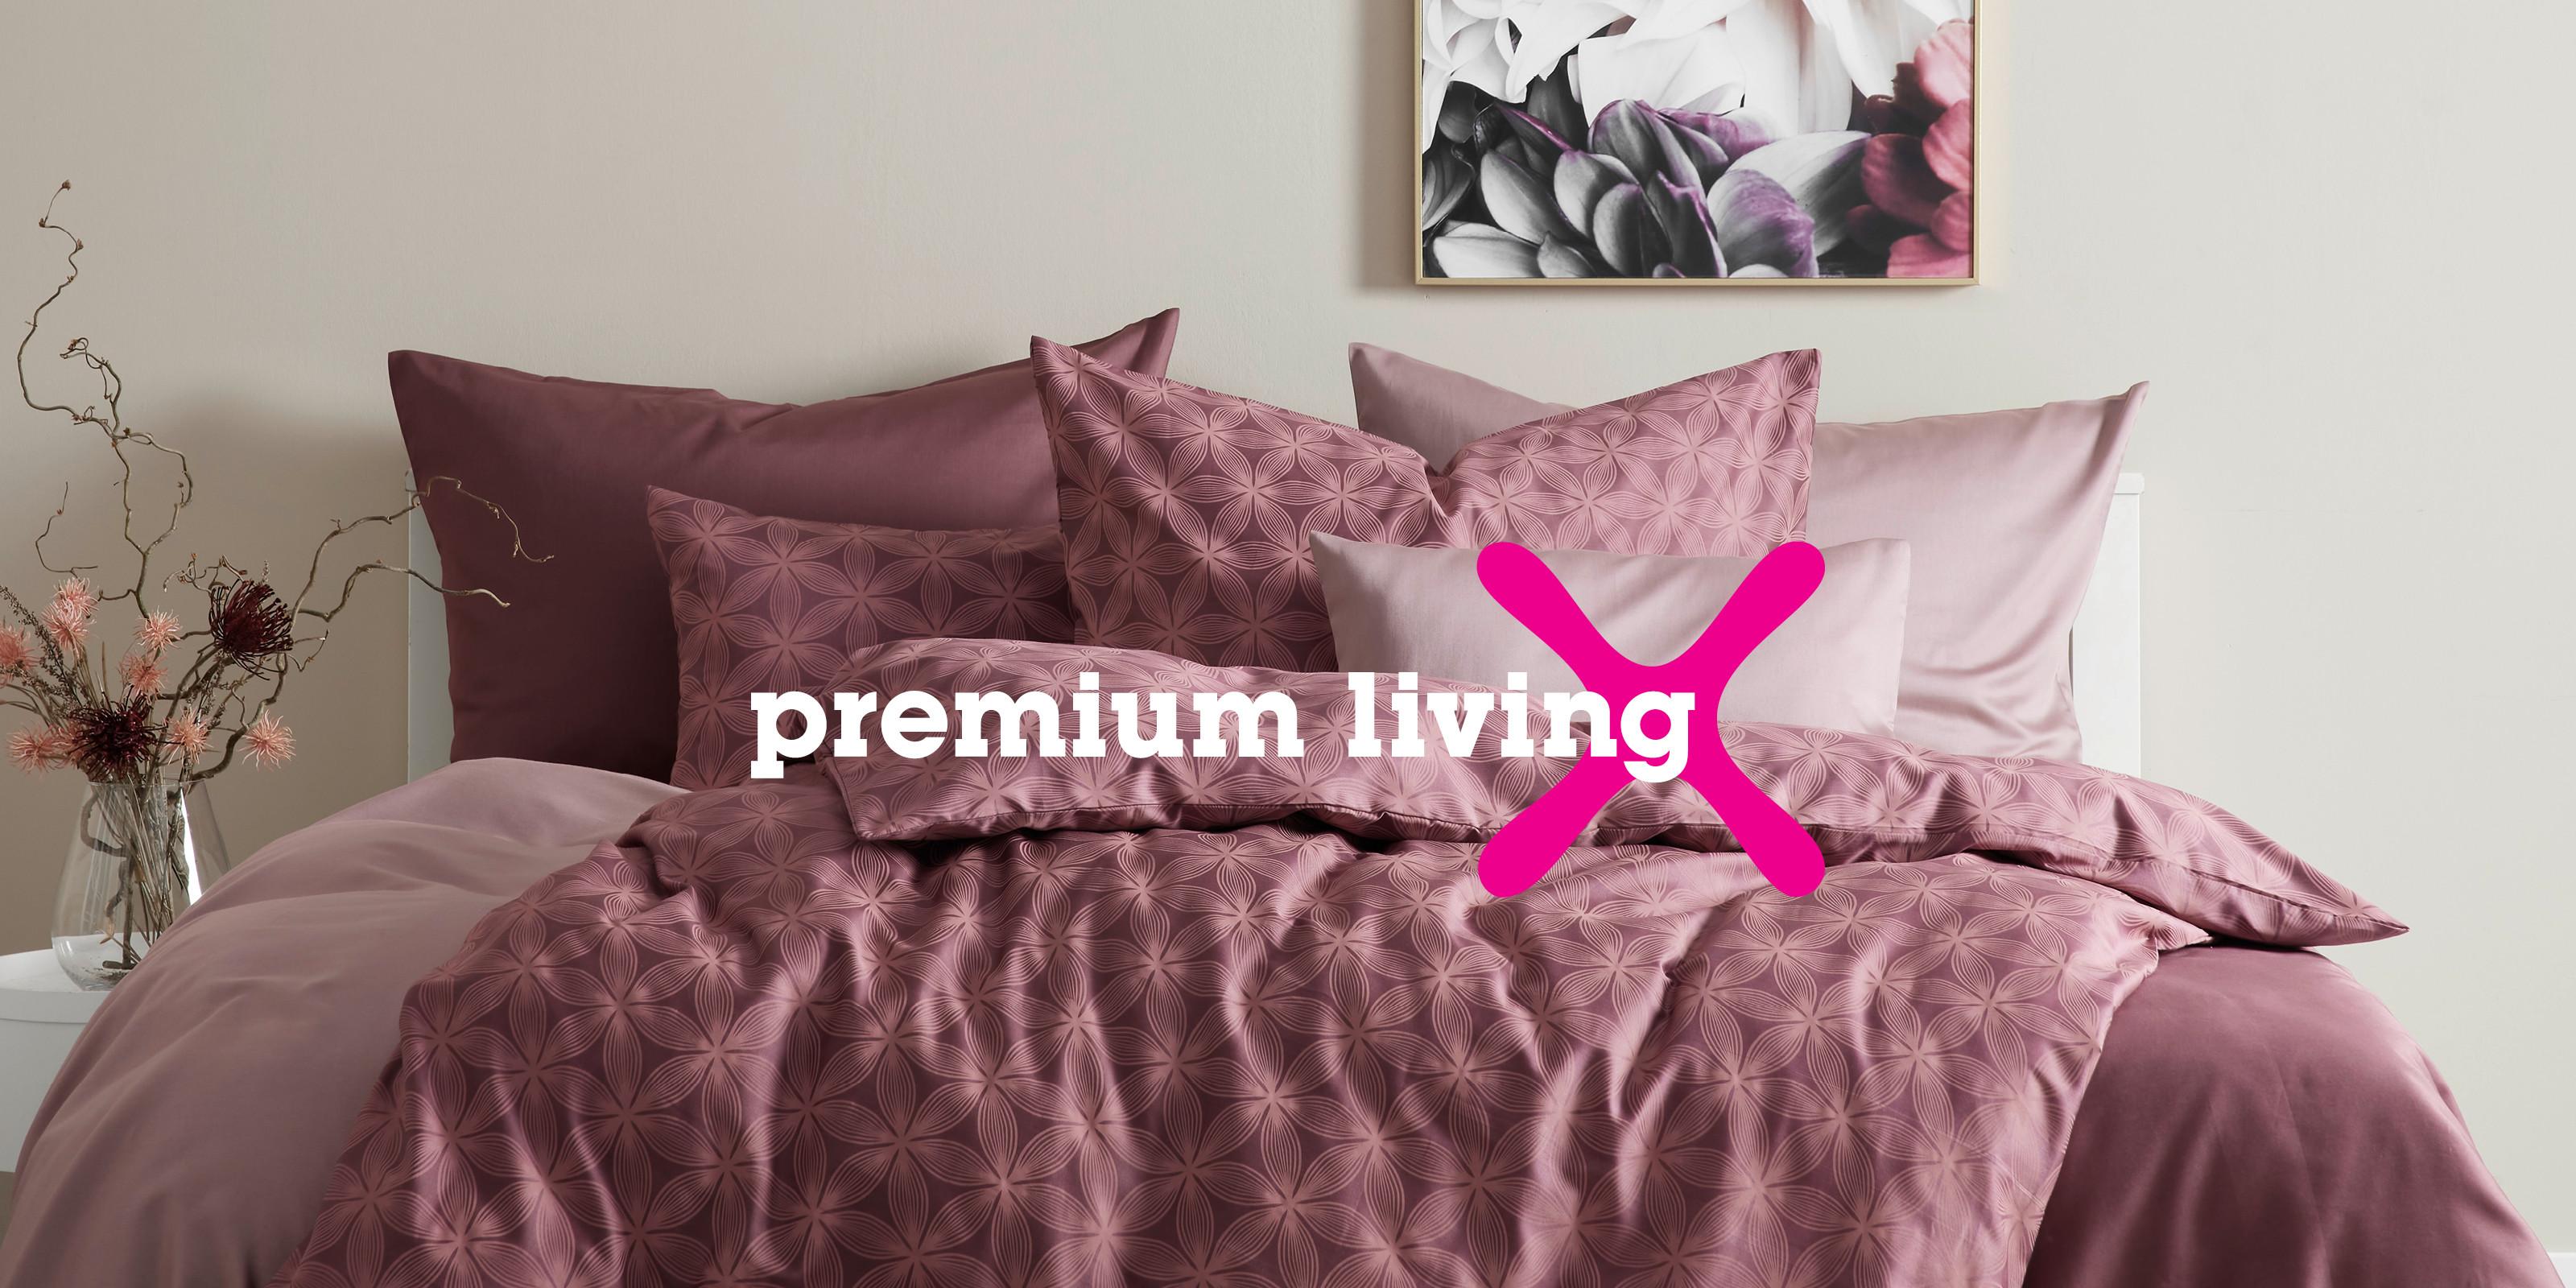 ložní prádlo Premium Living